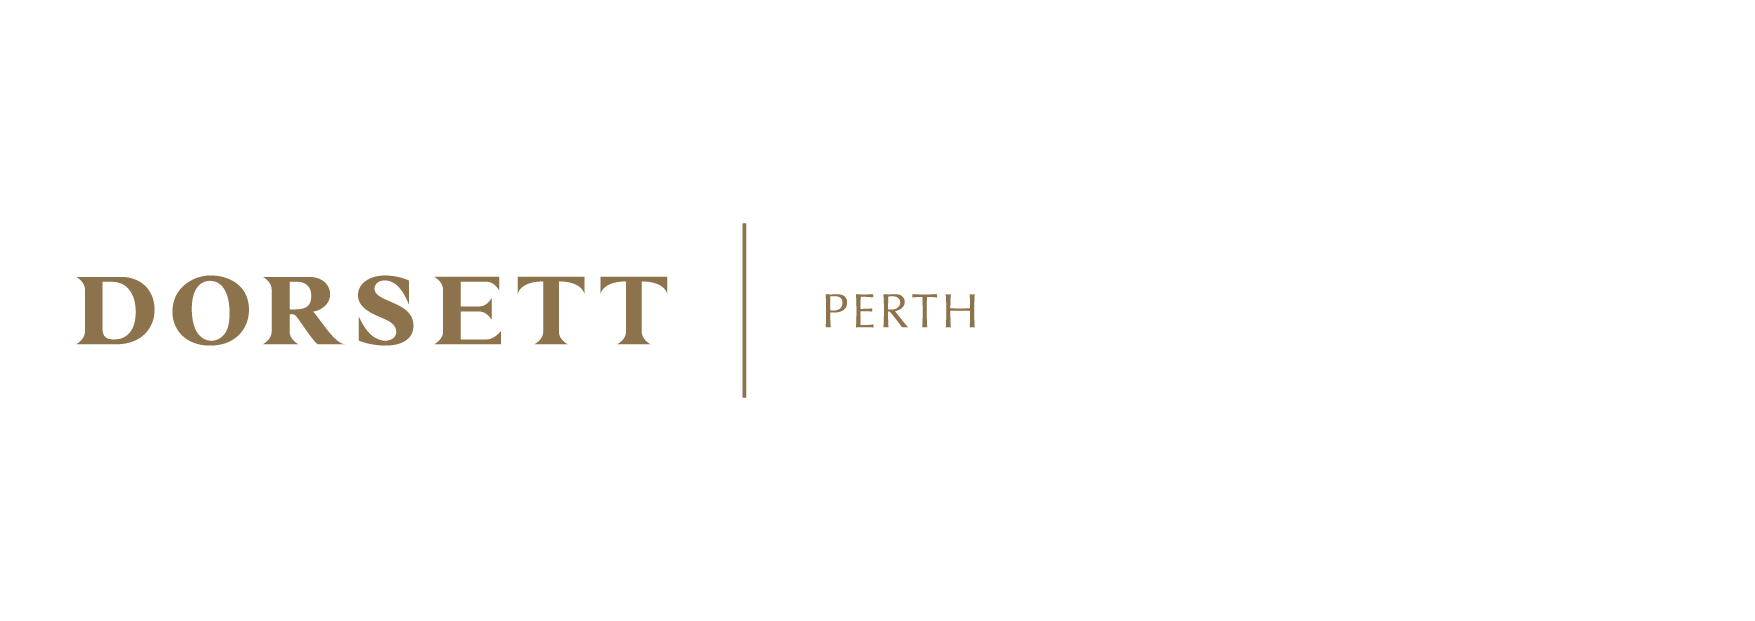 Dorsett Perth